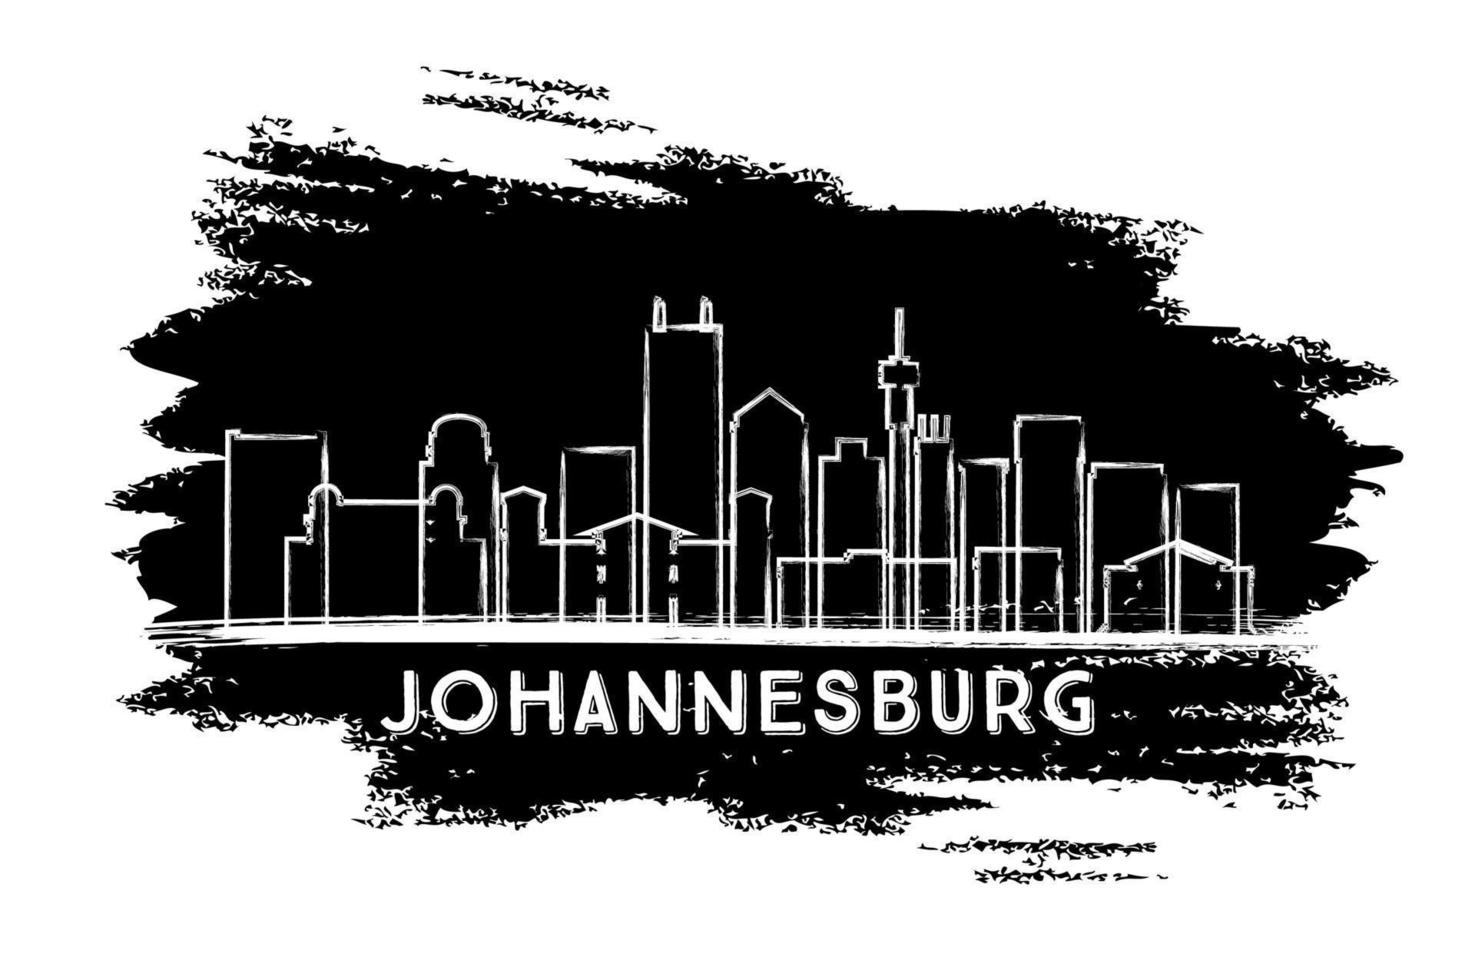 silueta del horizonte de la ciudad de johannesburgo, sudáfrica. boceto dibujado a mano. vector